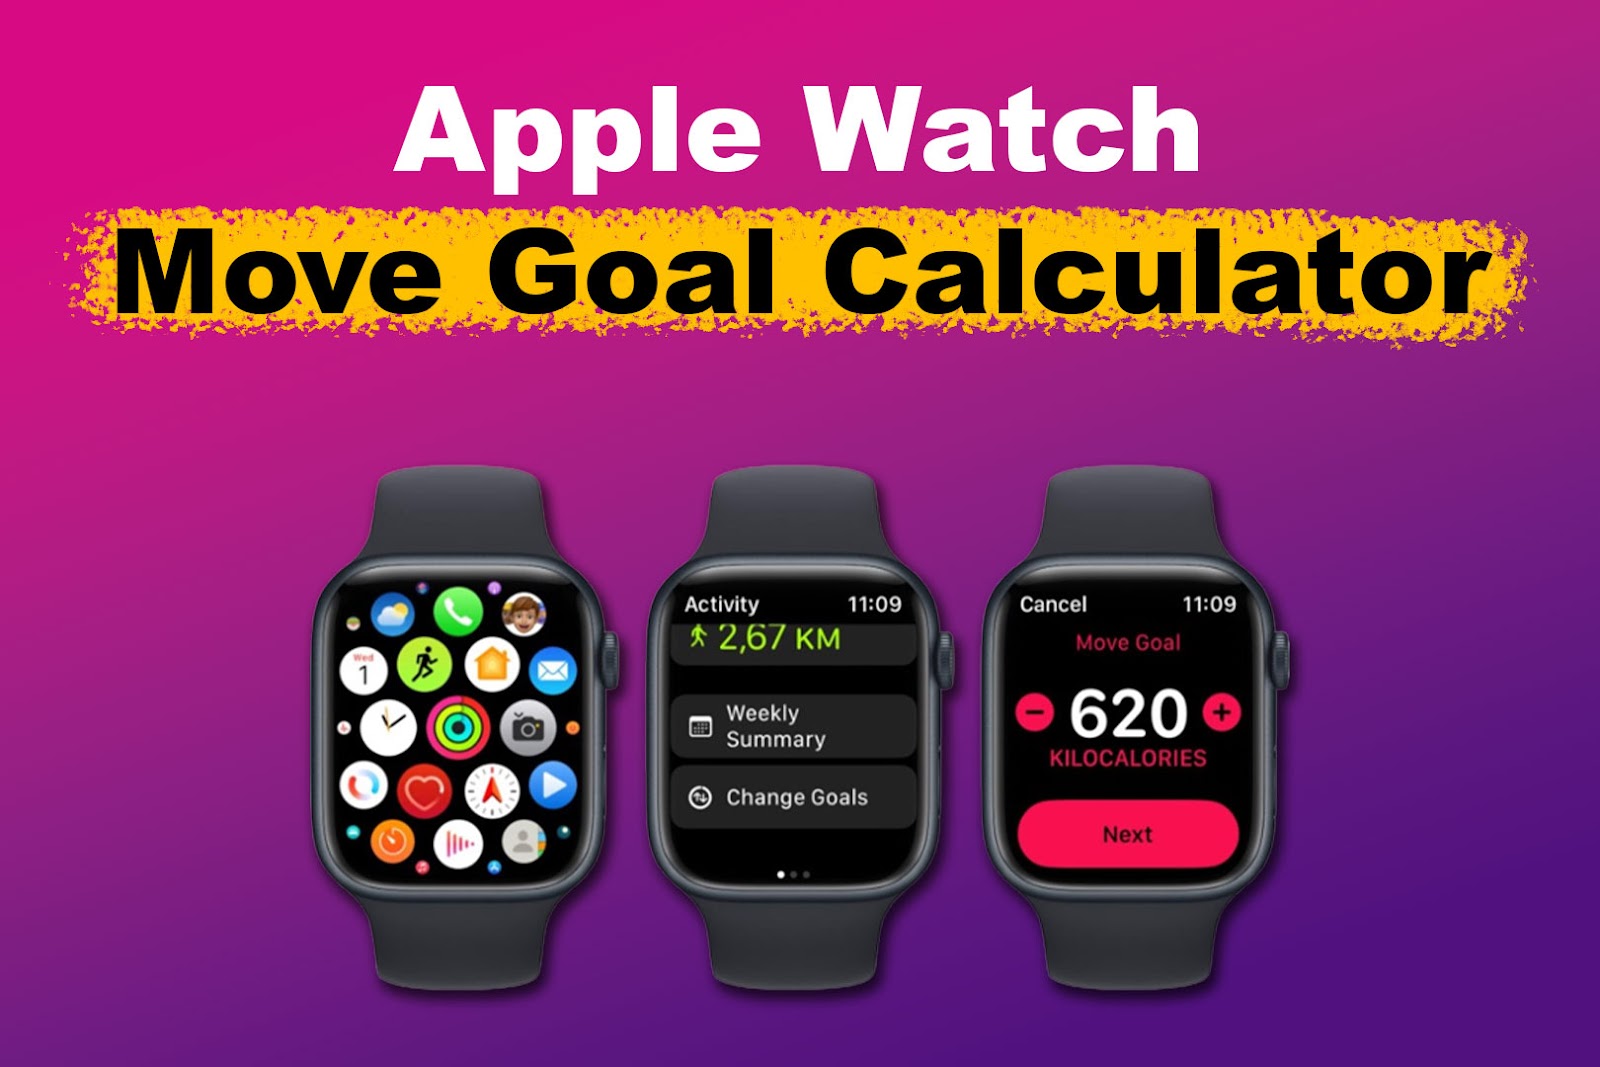 Understanding the Apple Watch Move Goal Calculator